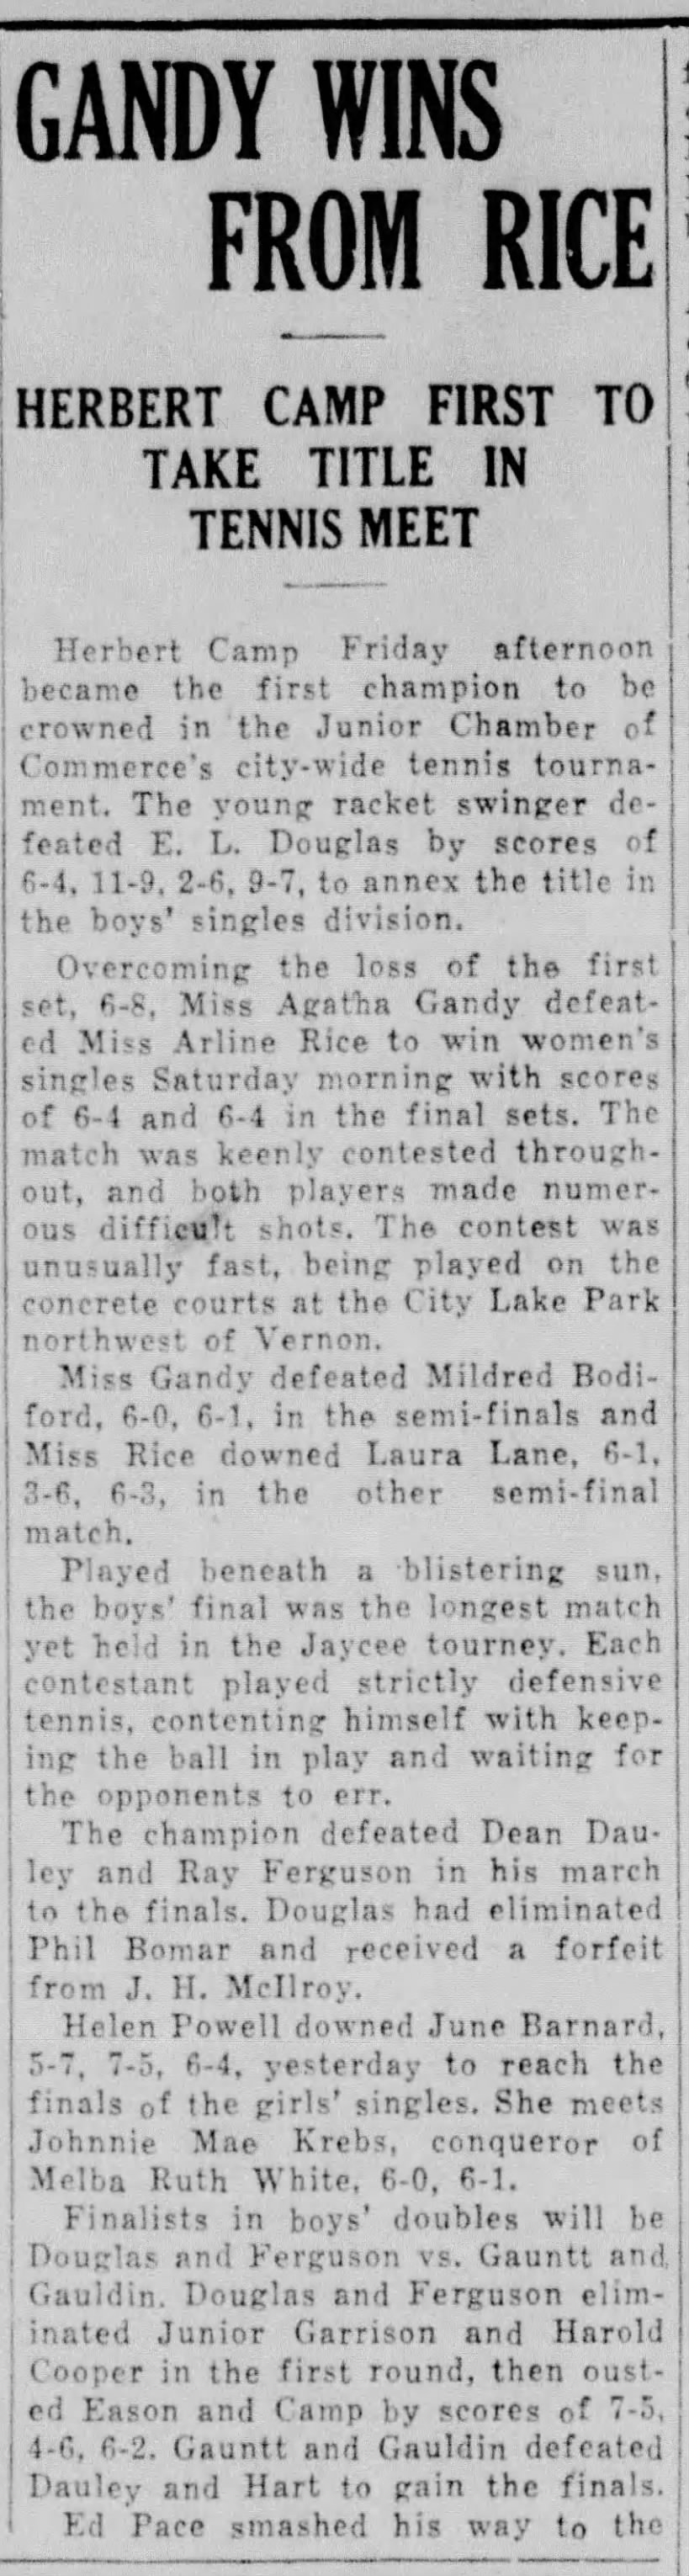 The Vernon Daily Record, TX, 12 Jun 1937 p6 c2